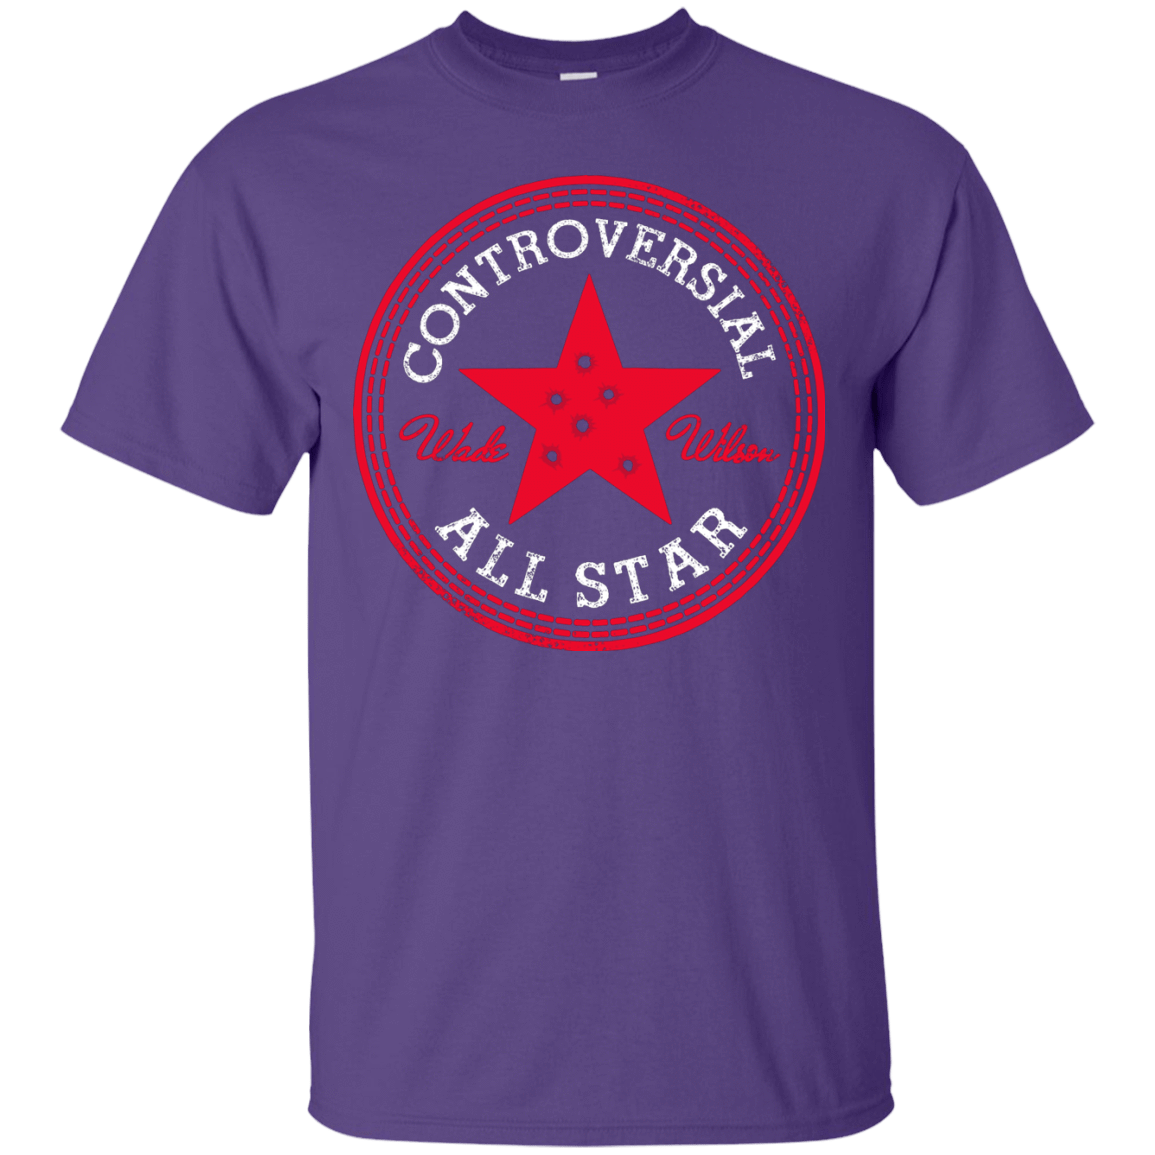 T-Shirts Purple / Small All Star T-Shirt